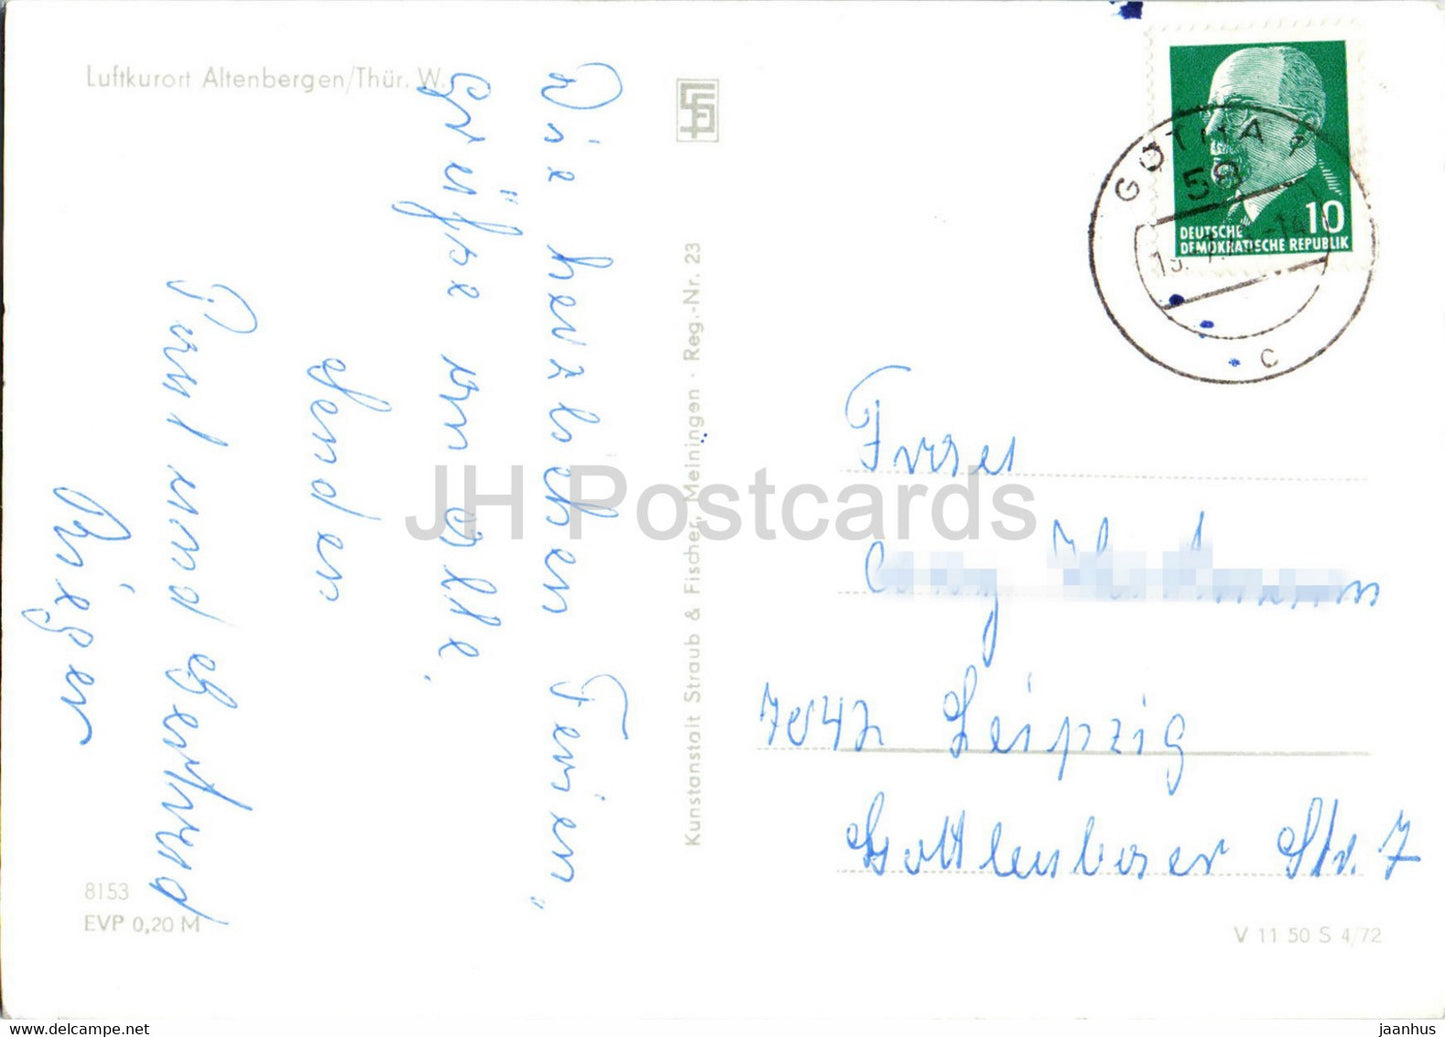 Luftkurort Altenbergen - old postcard - Germany DDR - used